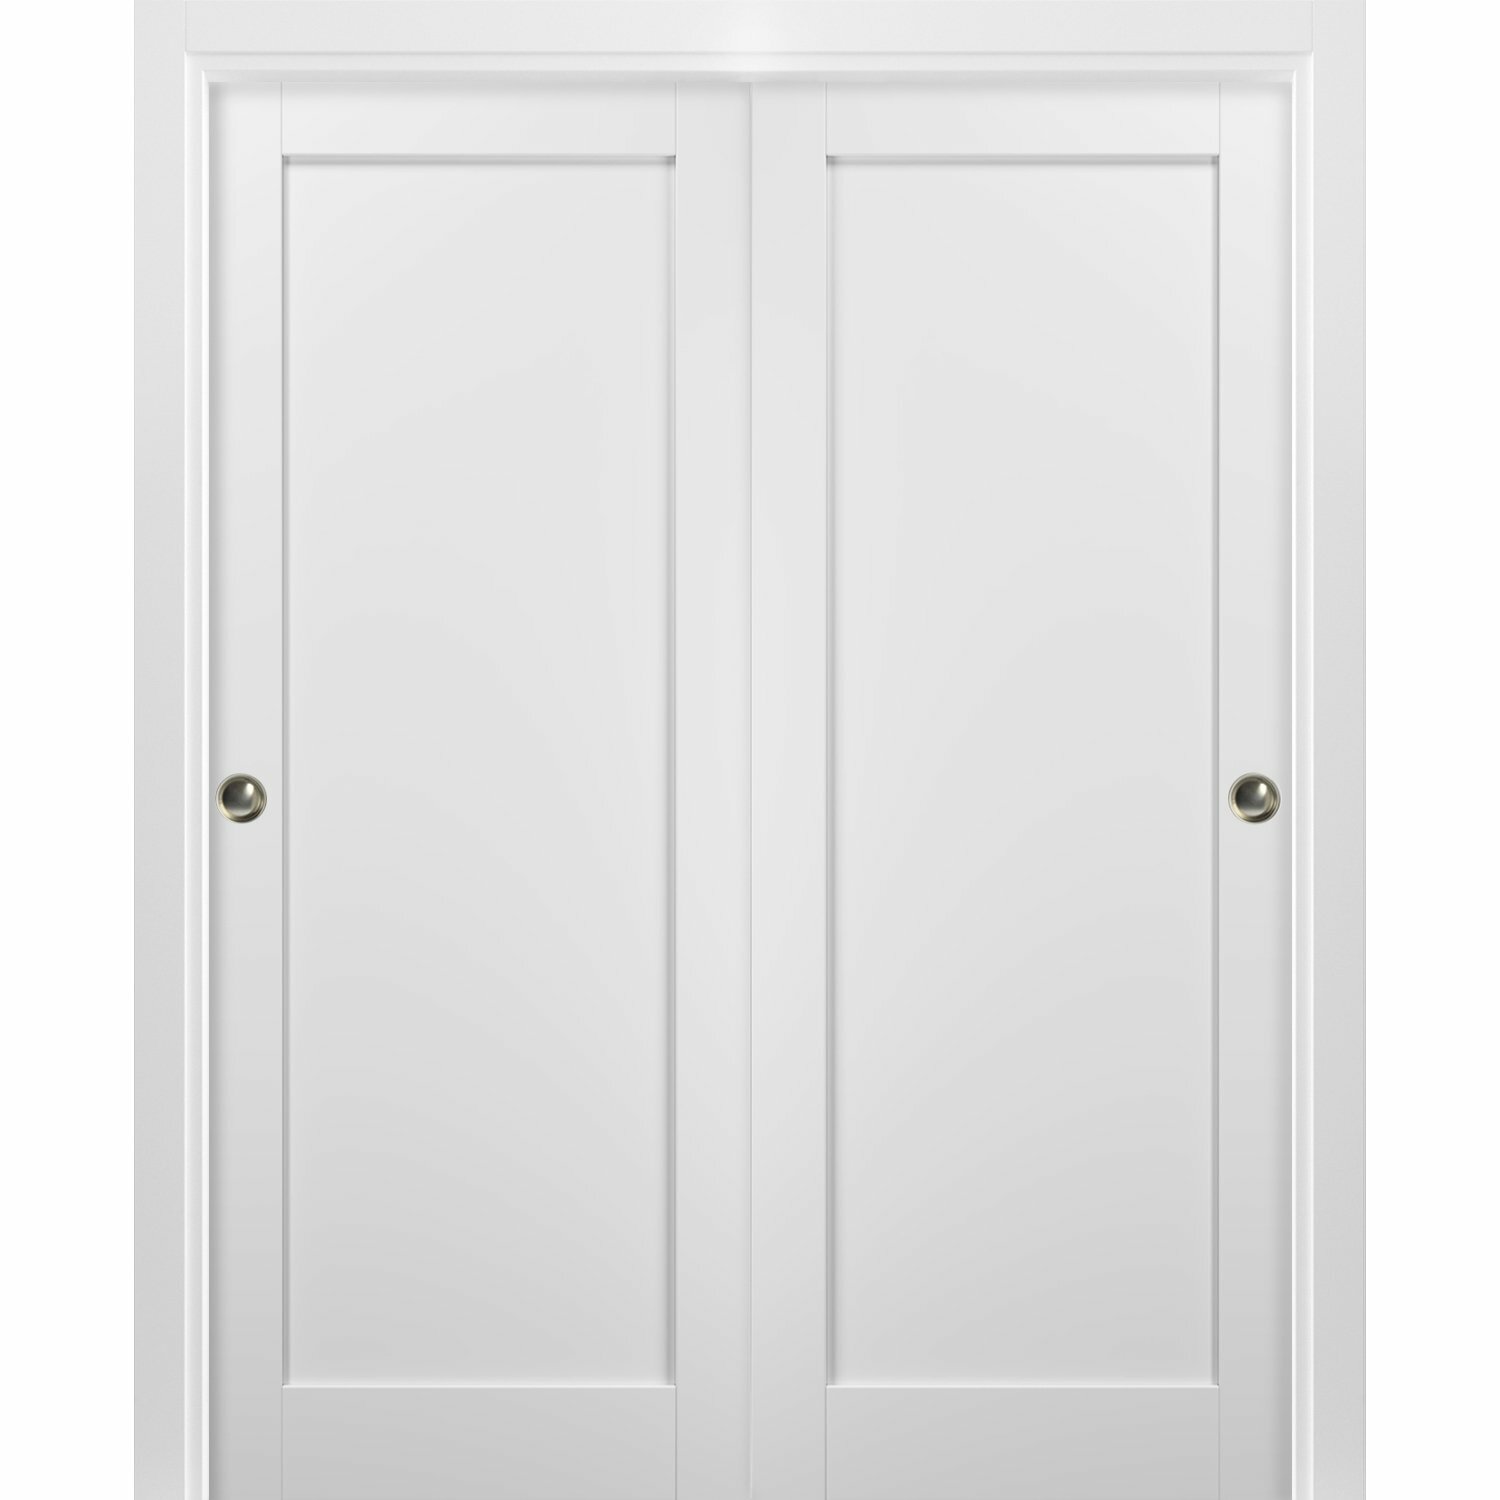 SARTODOORS Quadro Paneled Sliding Closet Doors & Reviews | Wayfair